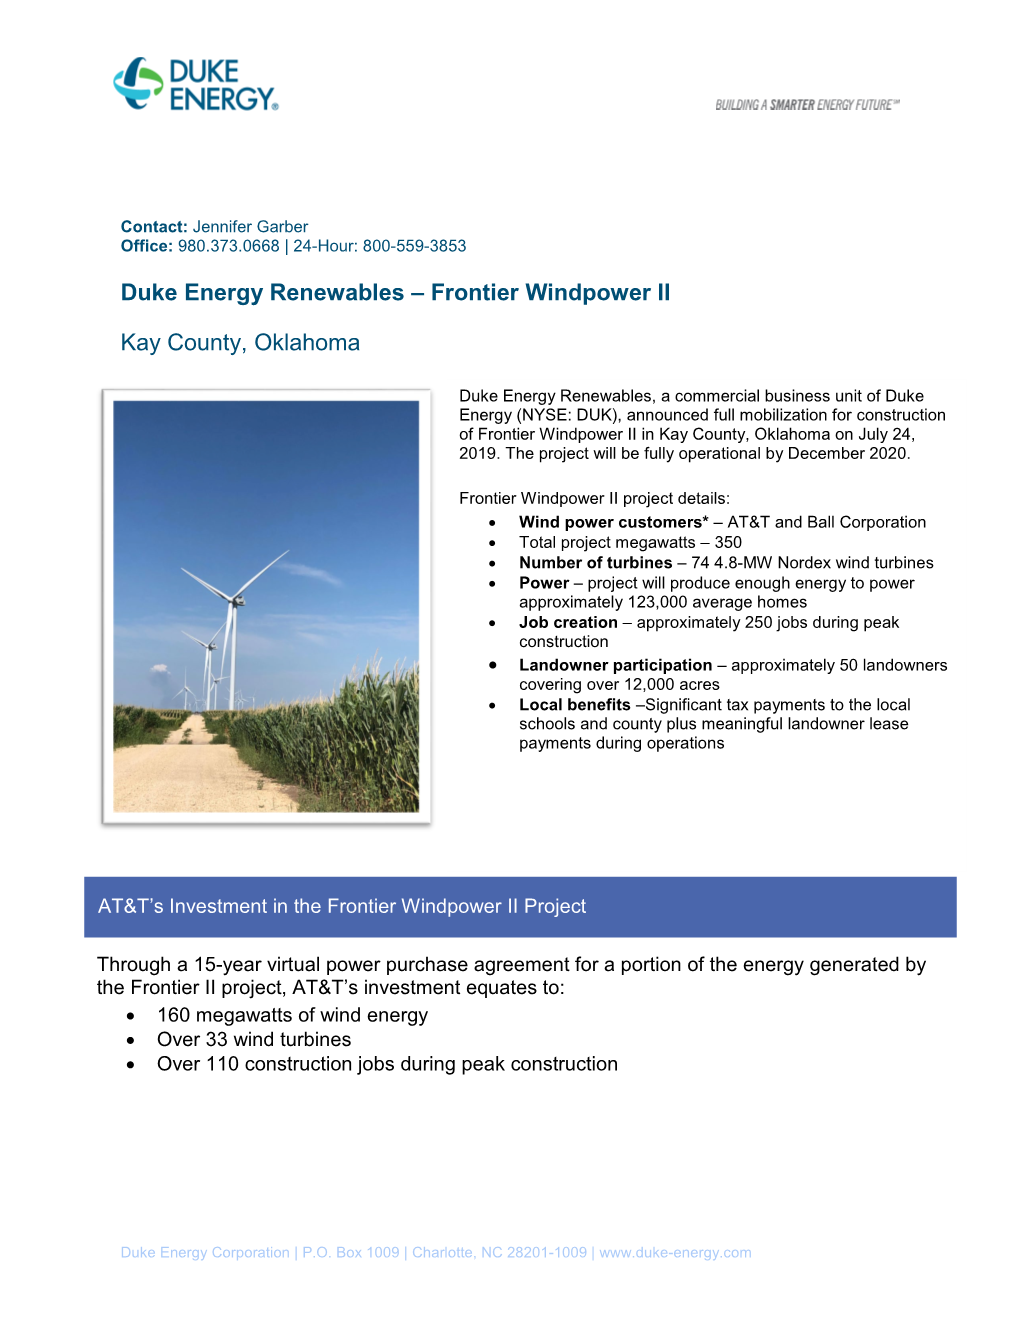 Frontier Windpower II: Duke Energy Renewables